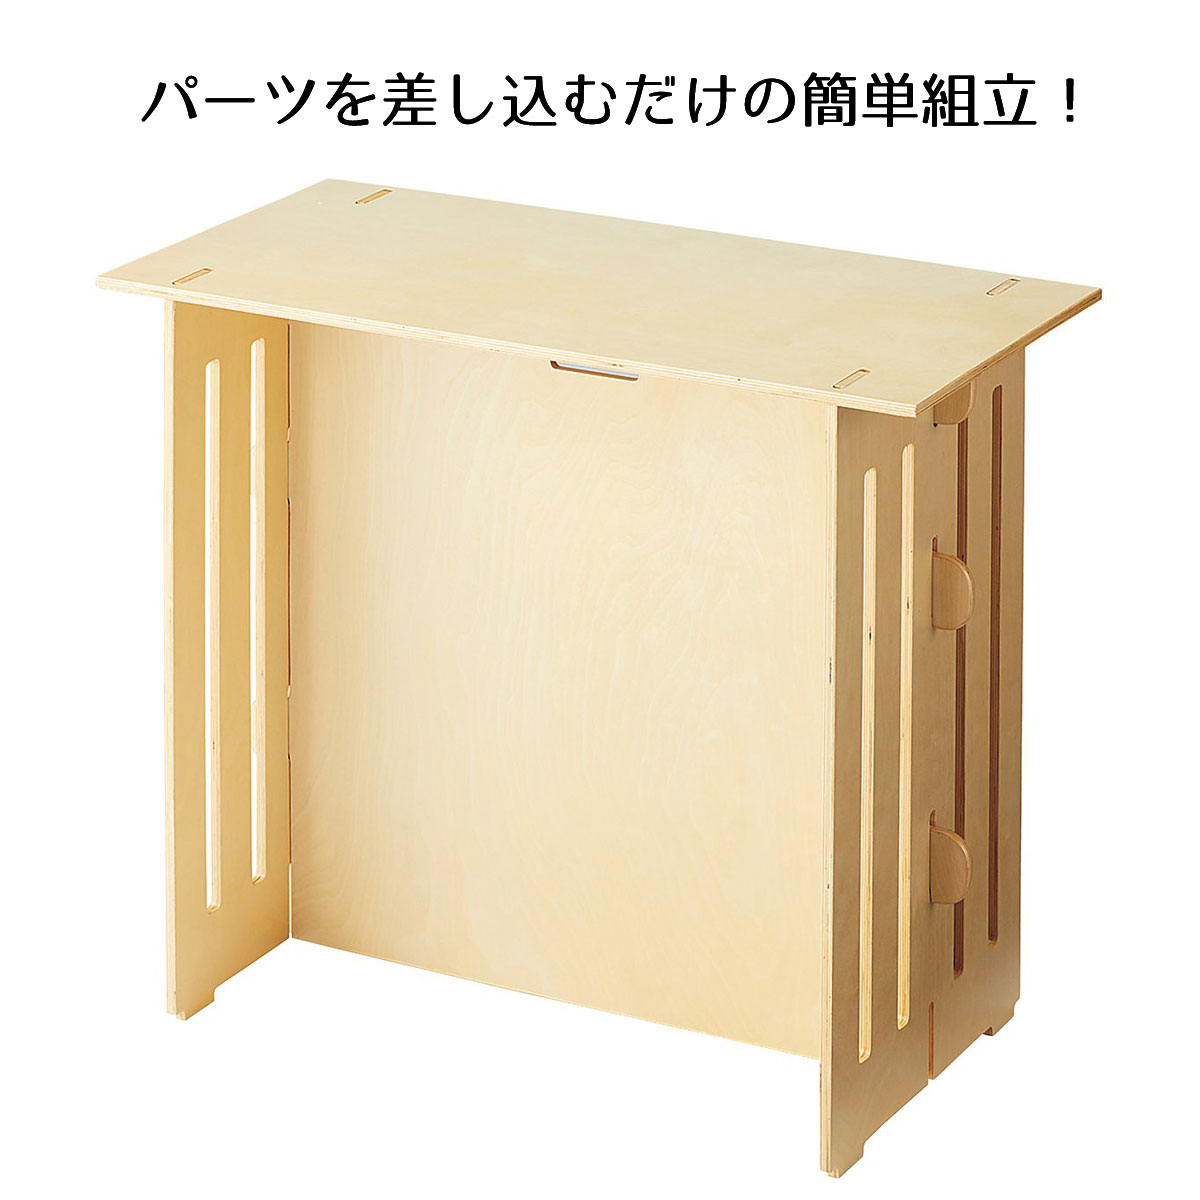 木製簡易テーブル 長方形タイプ 高さ75cm 1台差込式のパーツ構成により簡単に組立できます。サイズ ...